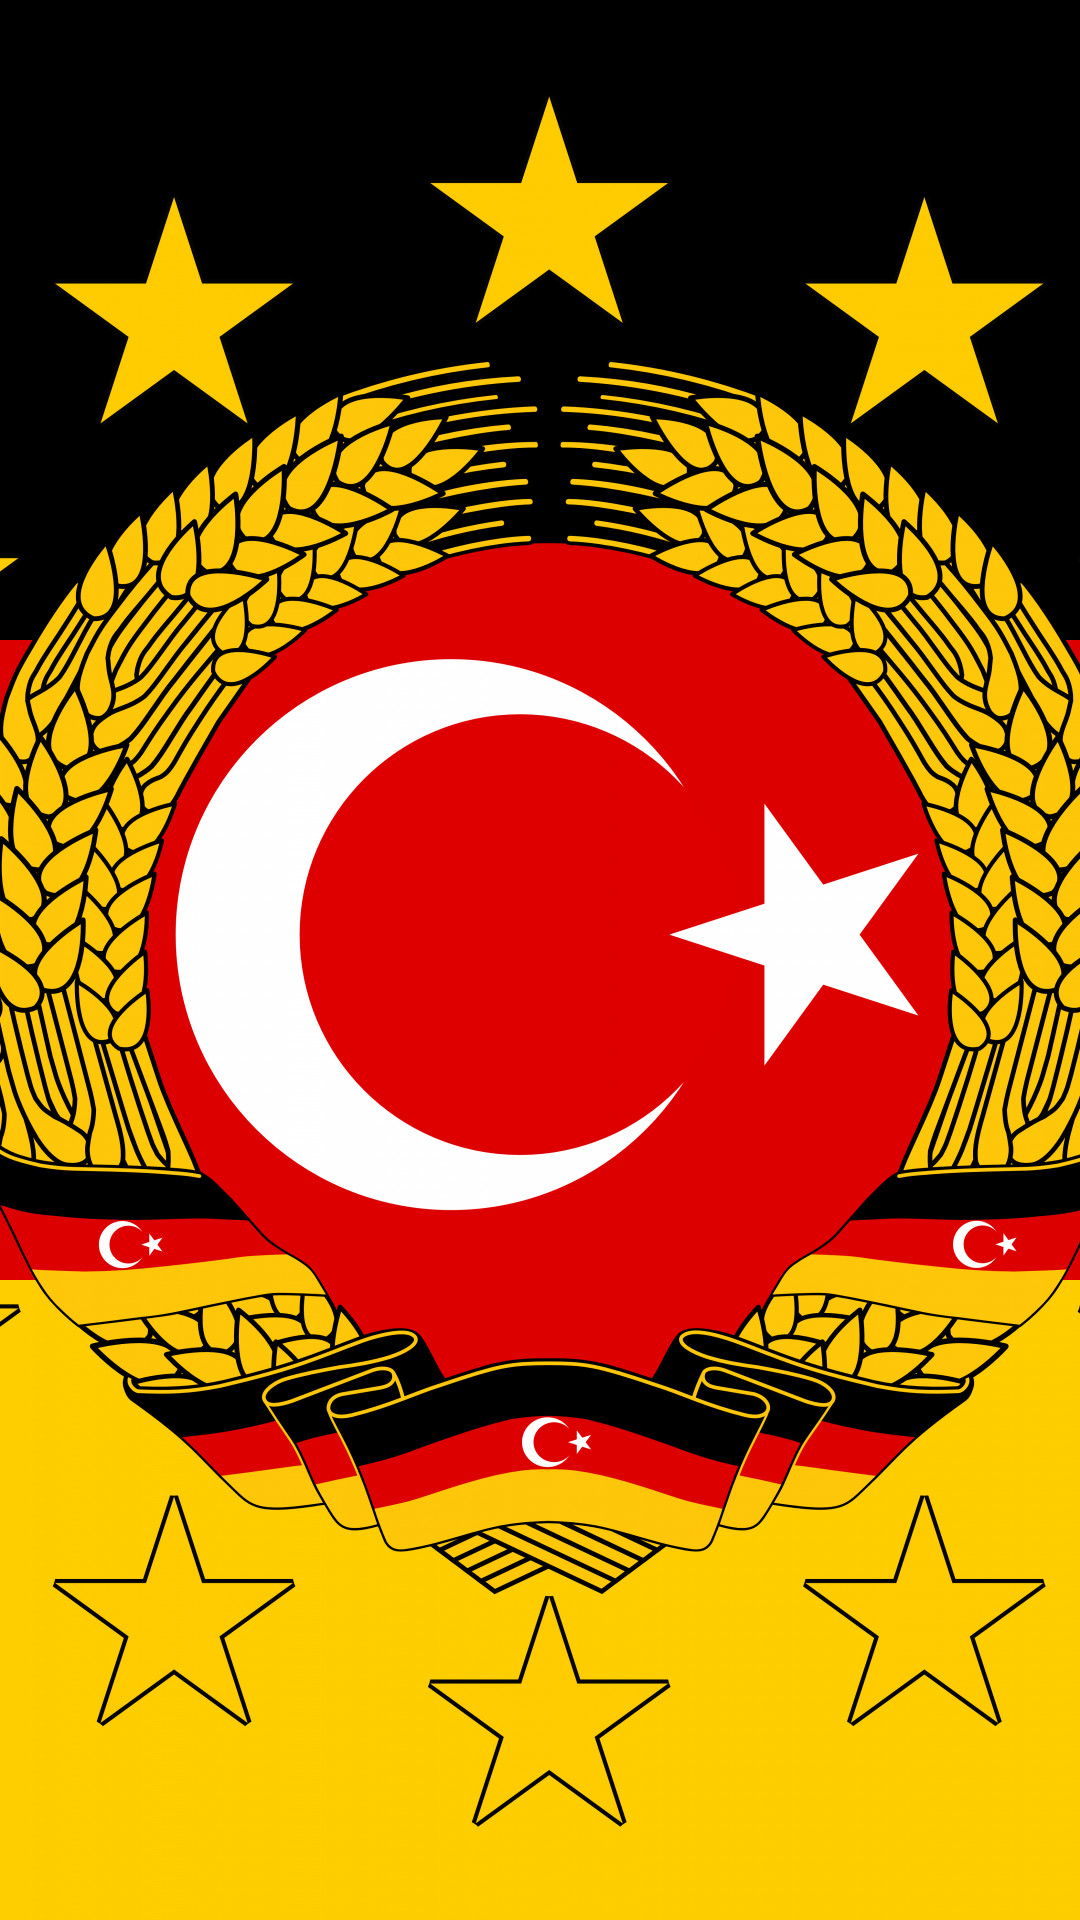 Turkey Flag - German Democratic Republic Emblem , HD Wallpaper & Backgrounds